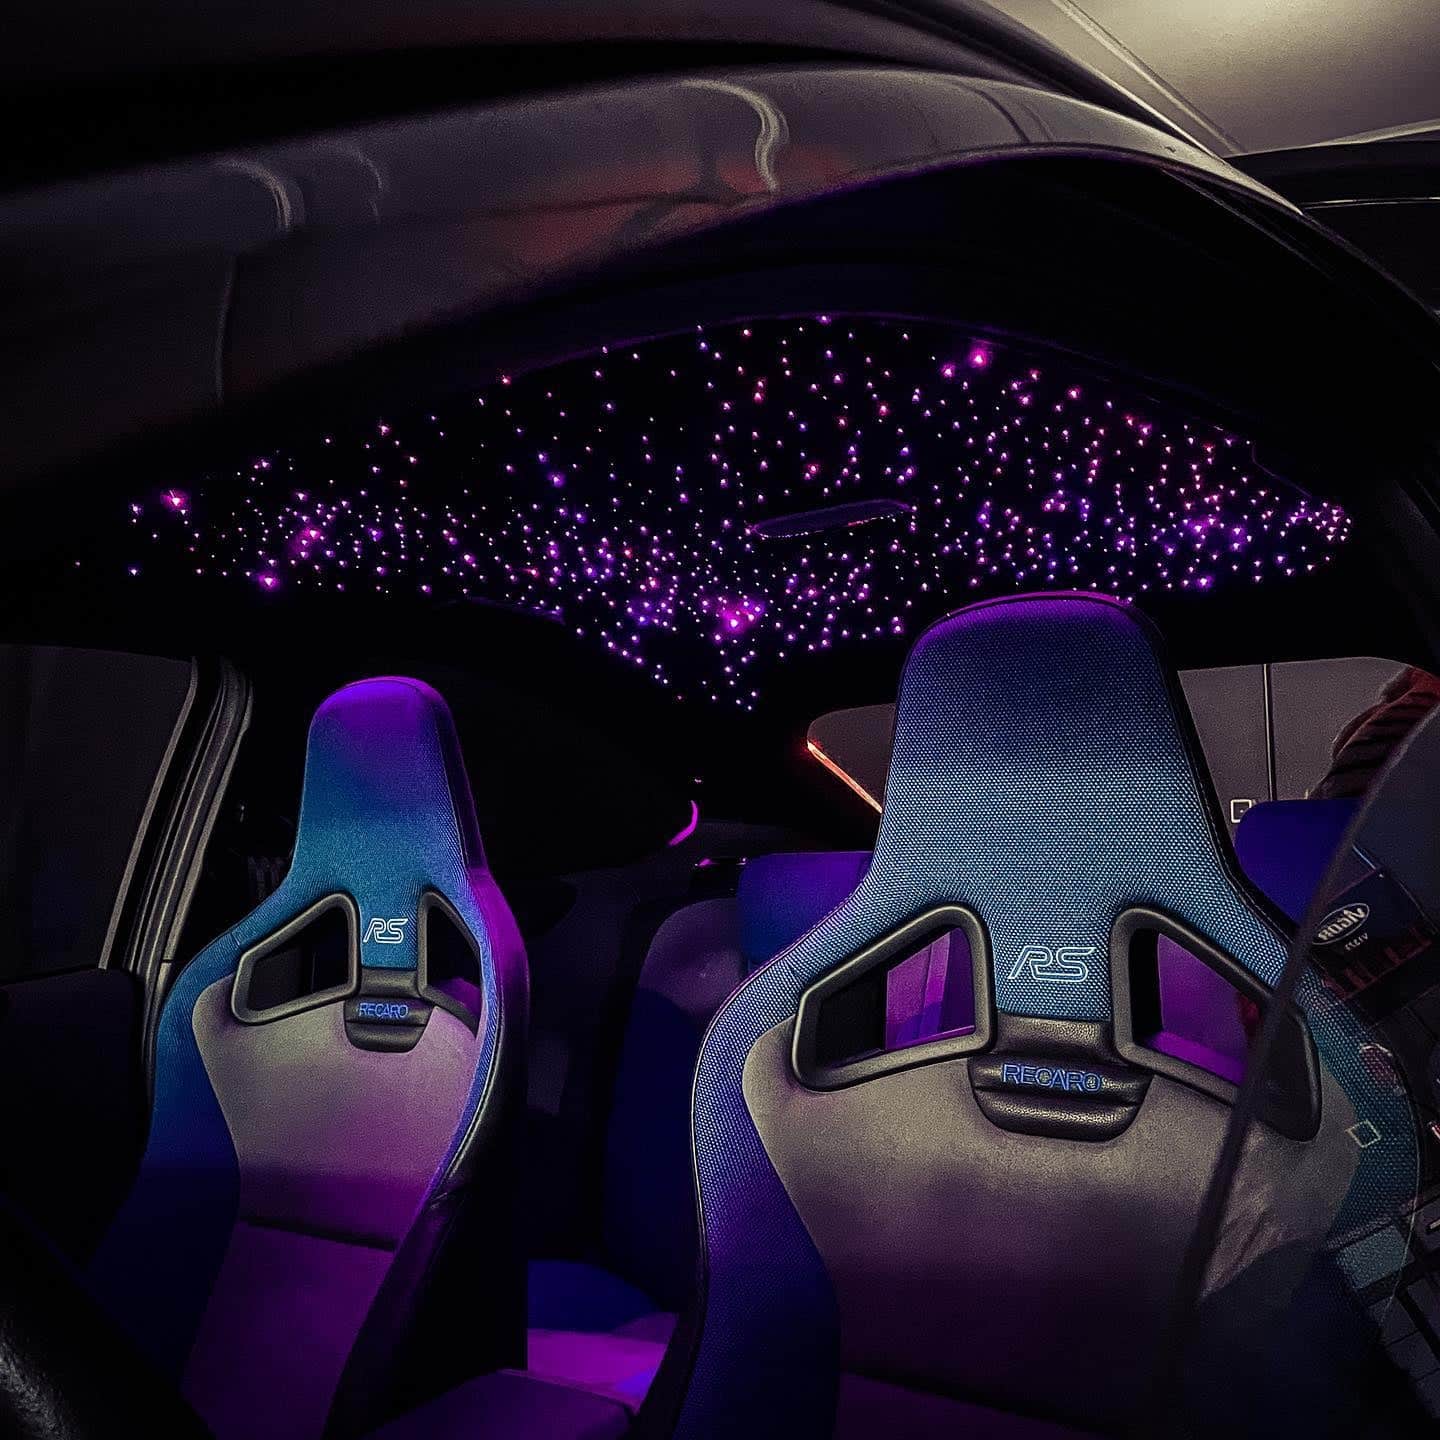 Auto Atmosphäre Licht Sternenhimmel Auto Dach Stern Licht Projektor @bugu